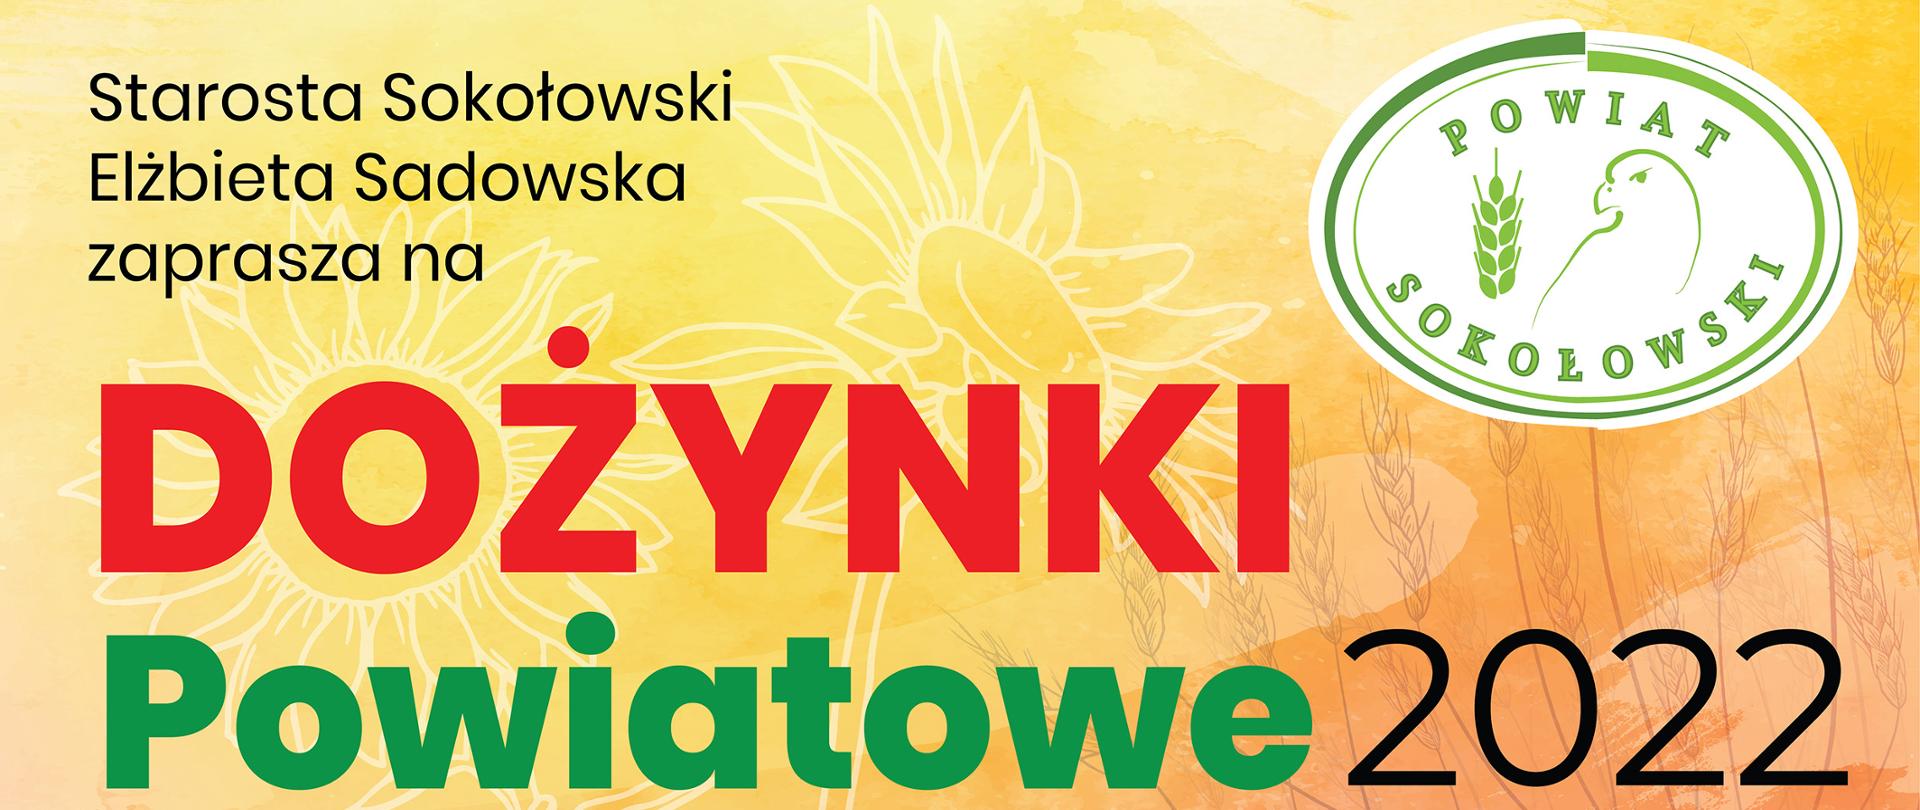 Plakat w kolorze pomarańczowym z informacjami dotyczącymi dożynek Powiatowych 2022 w dniu 28 sierpnia 2022 r. w Sokołowie Podlaskim.